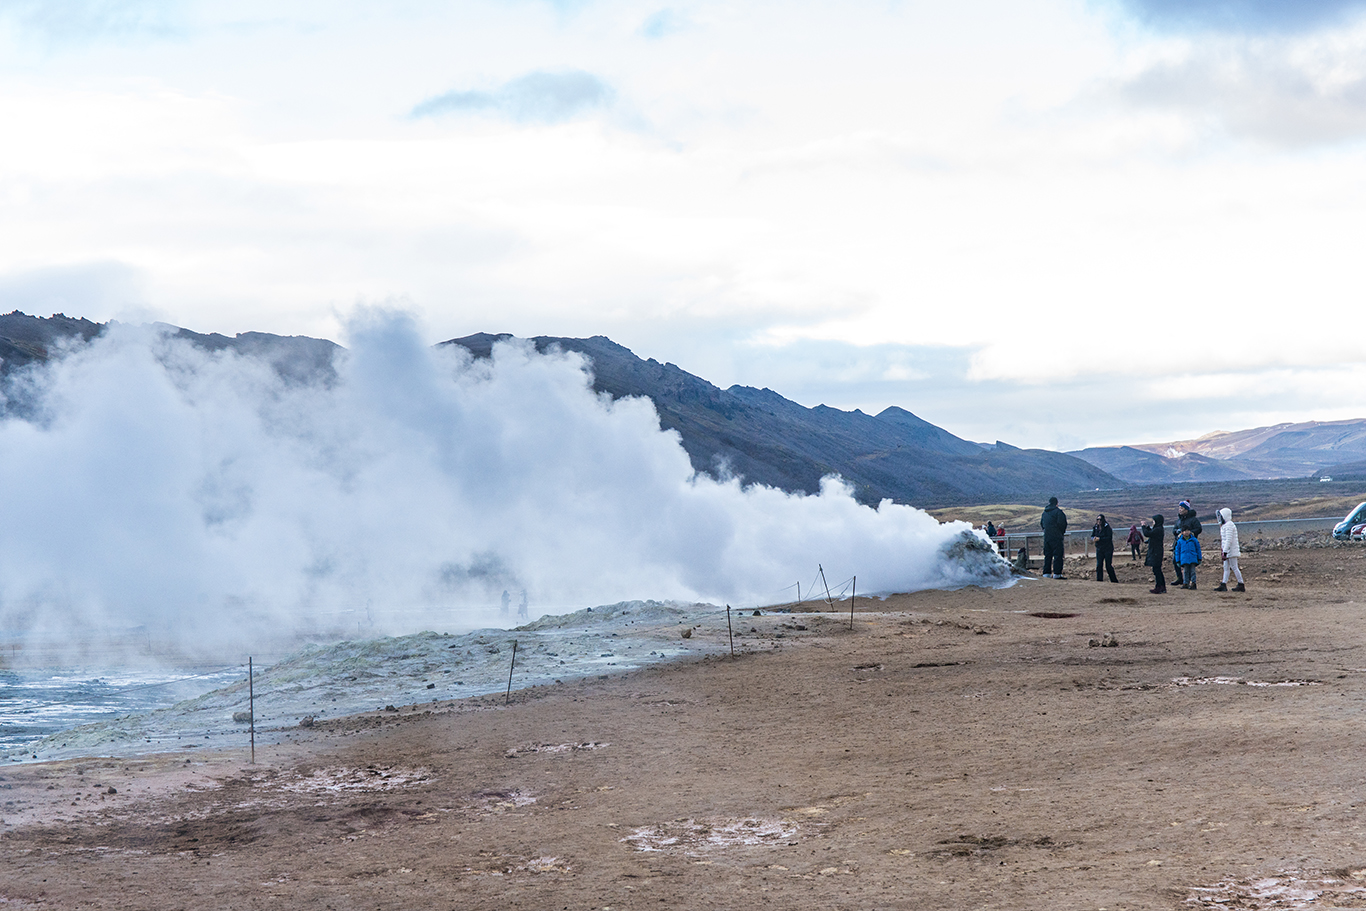 冰岛地热区 外星球般的景色仿佛烈火燃烧着大地